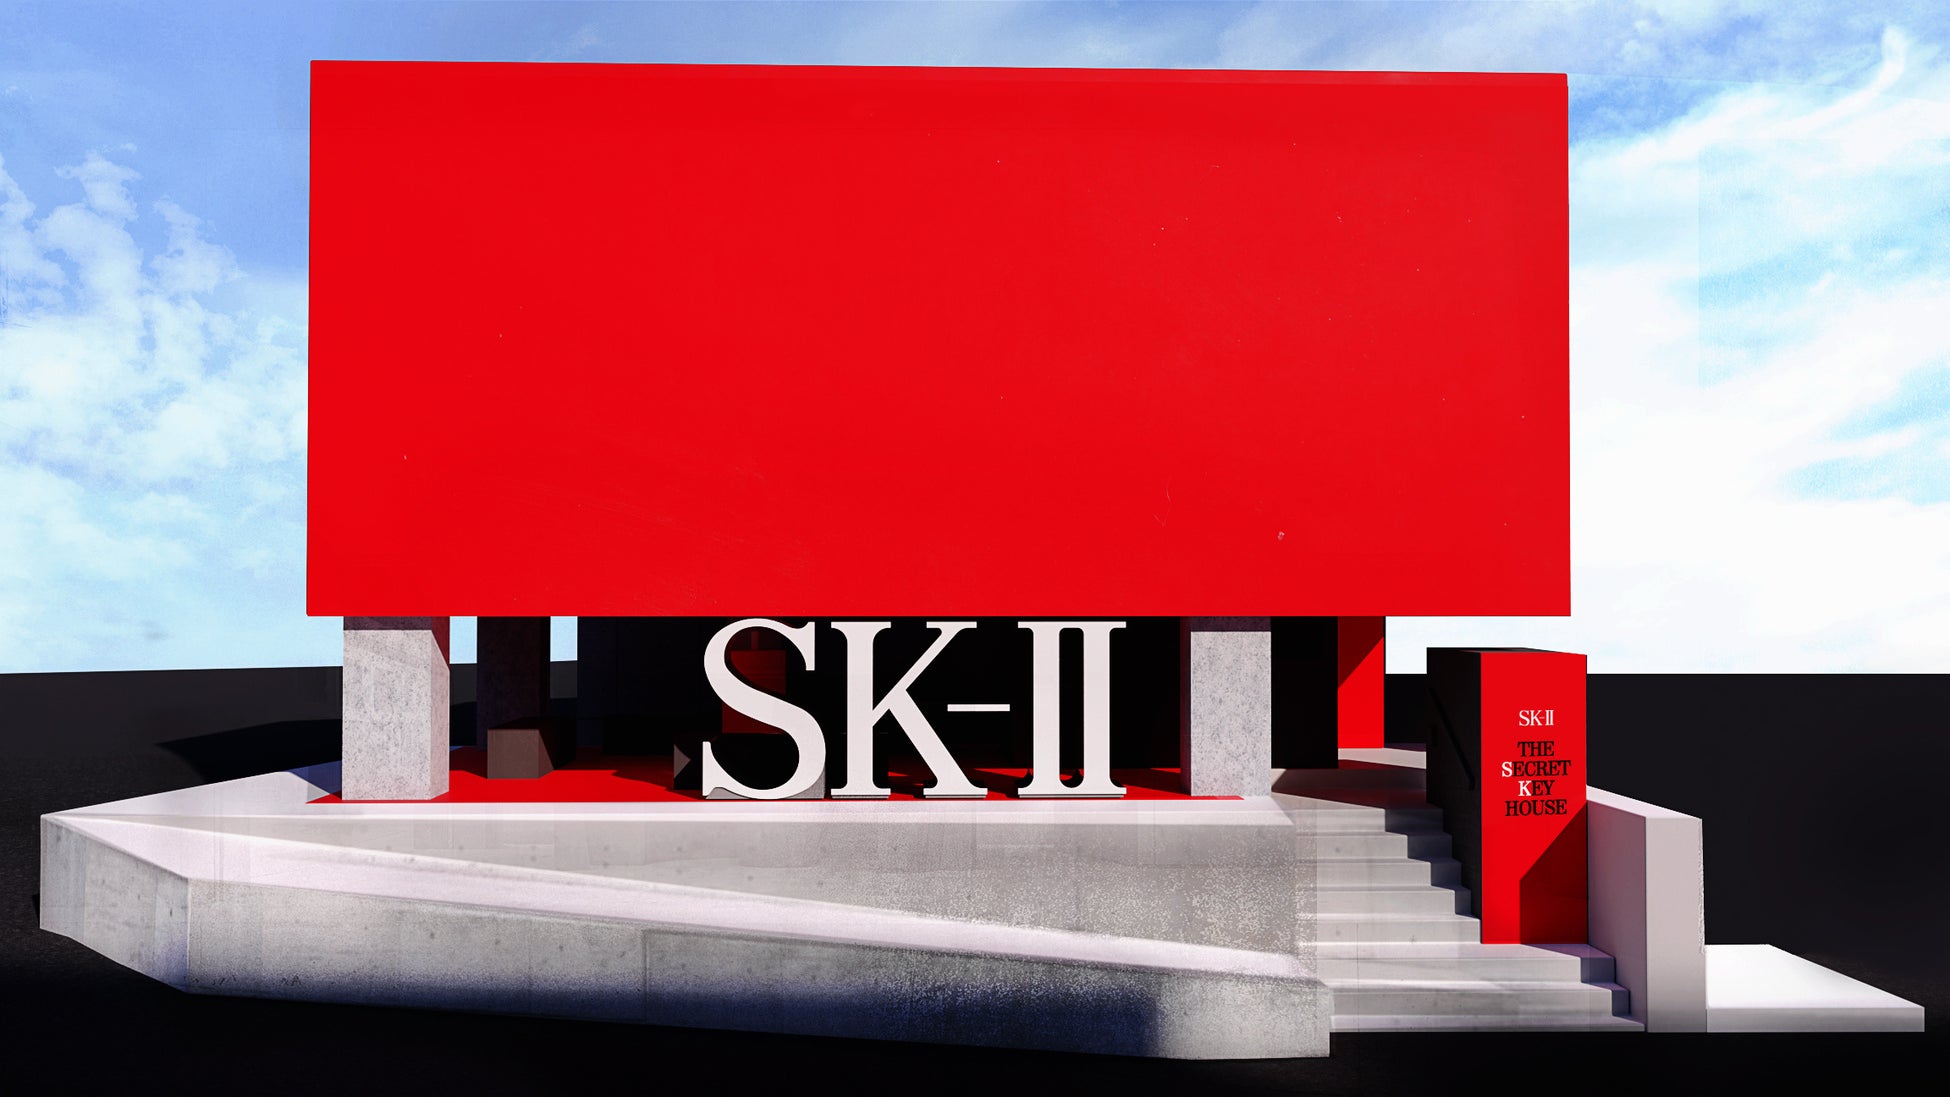 SK-IIが新・体験型イベント「シークレットキーハウス」を開催　ピテラ™とともにクリアな素肌へ